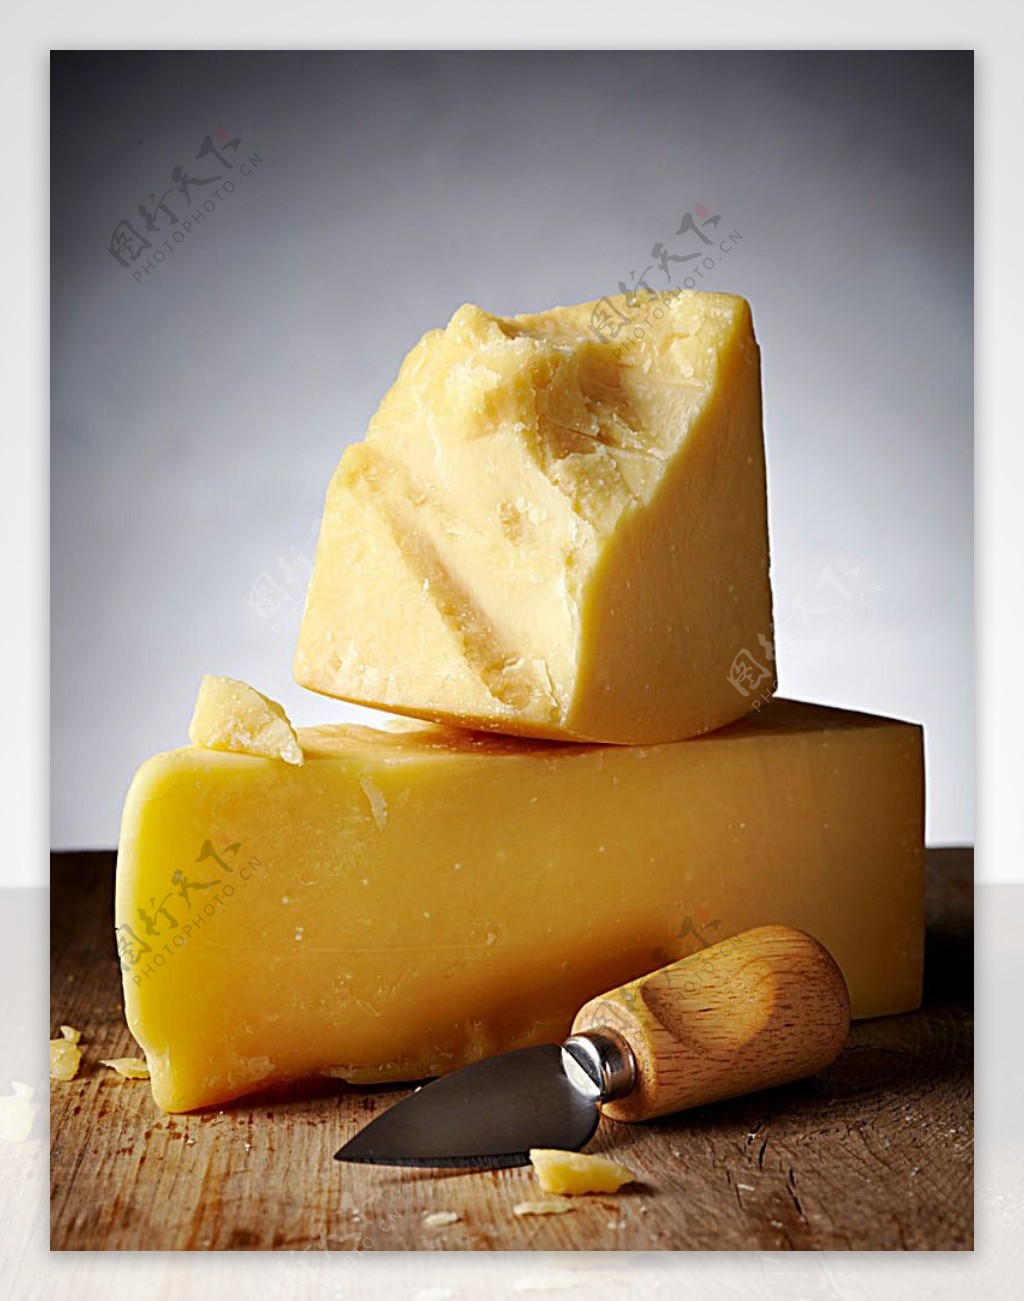 刀具与黄油奶酪